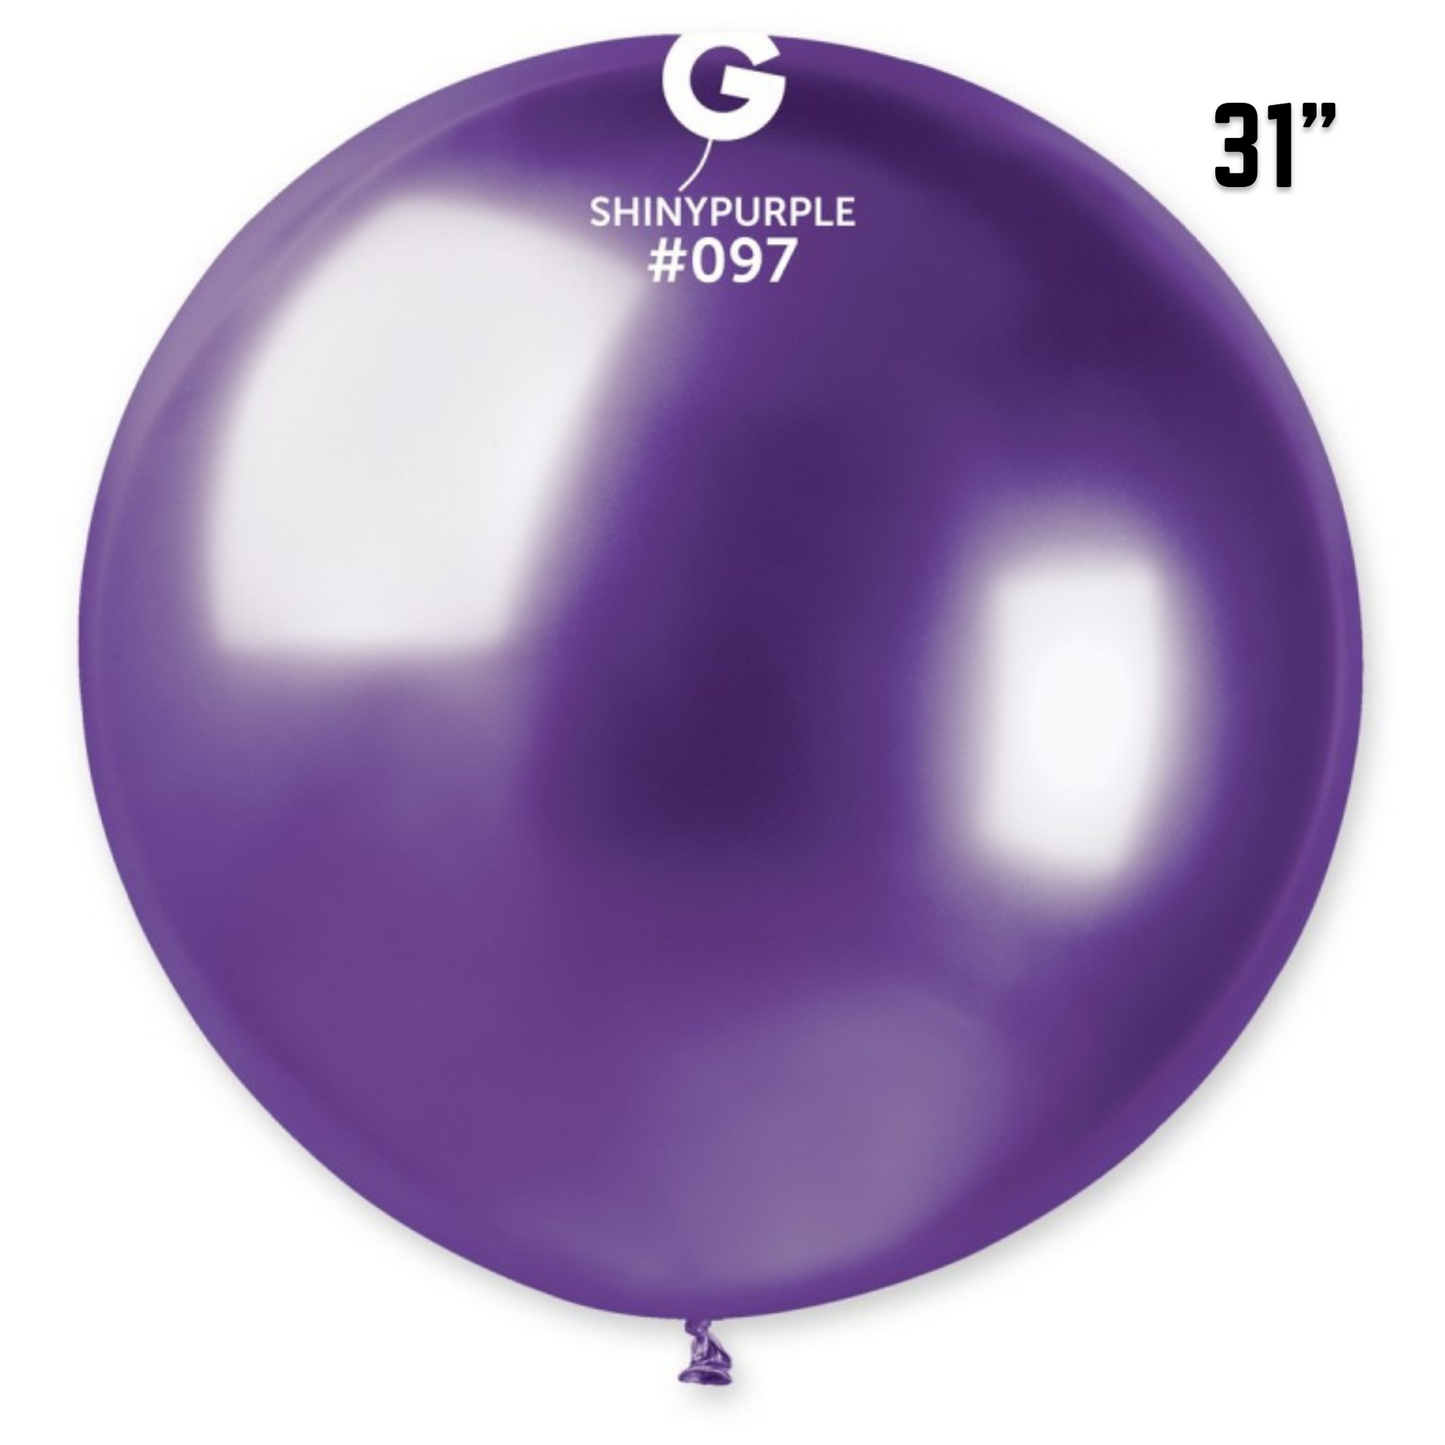 Shiny Purple Balloons